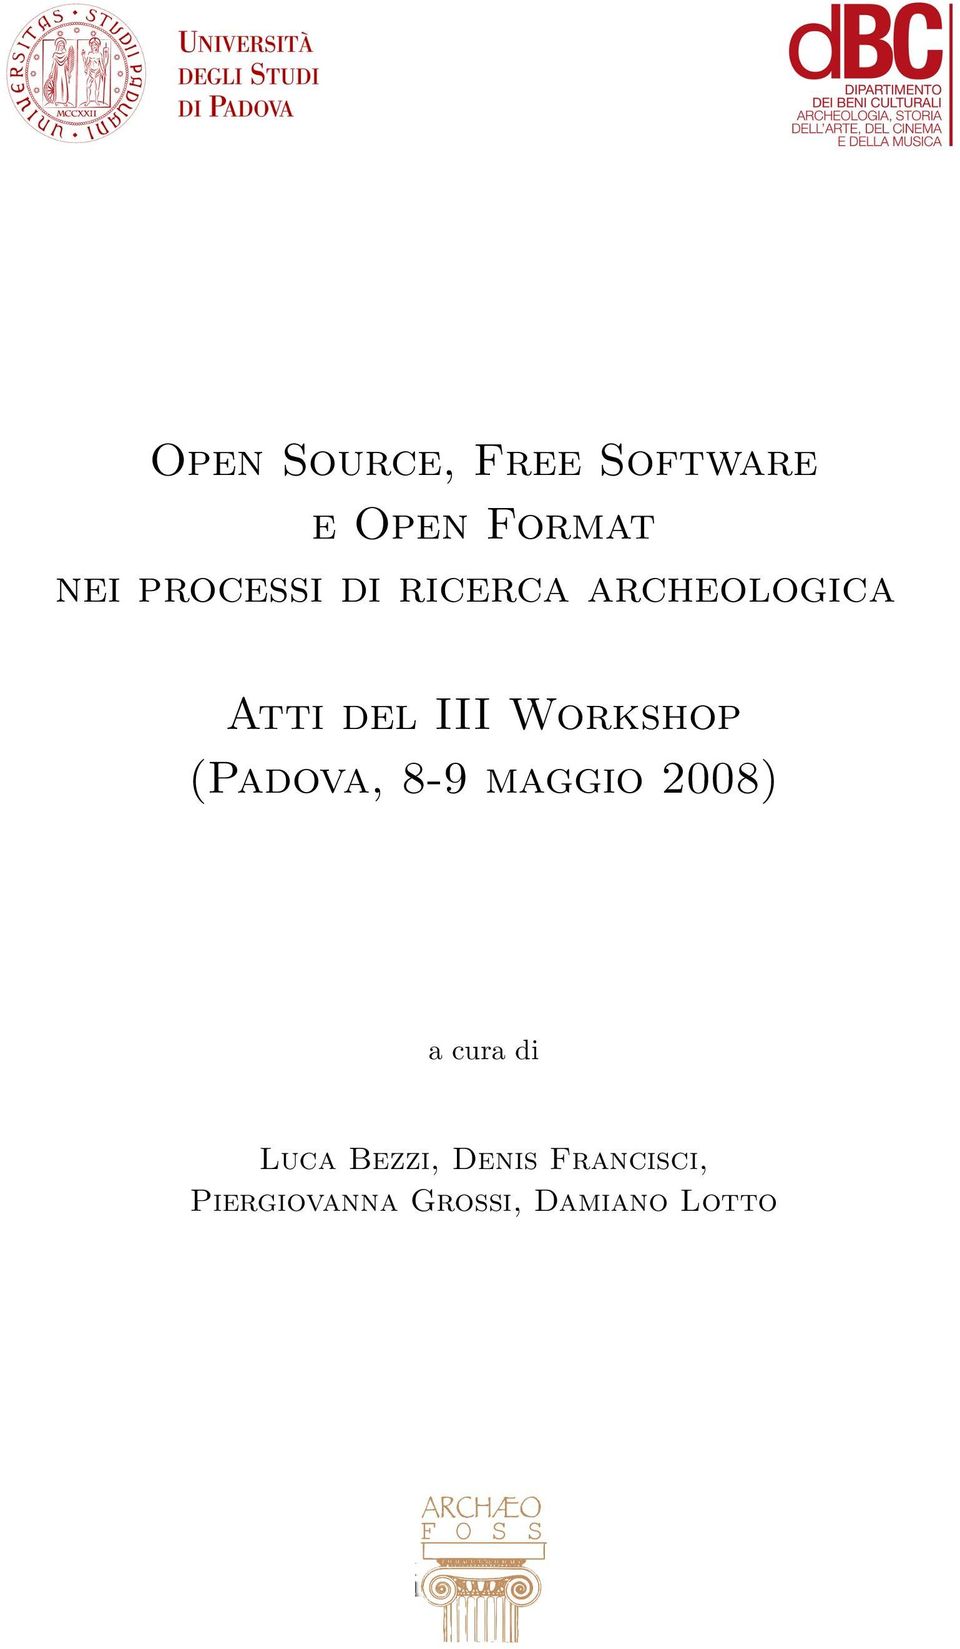 Workshop (Padova, 8-9 maggio 2008) a cura di Luca